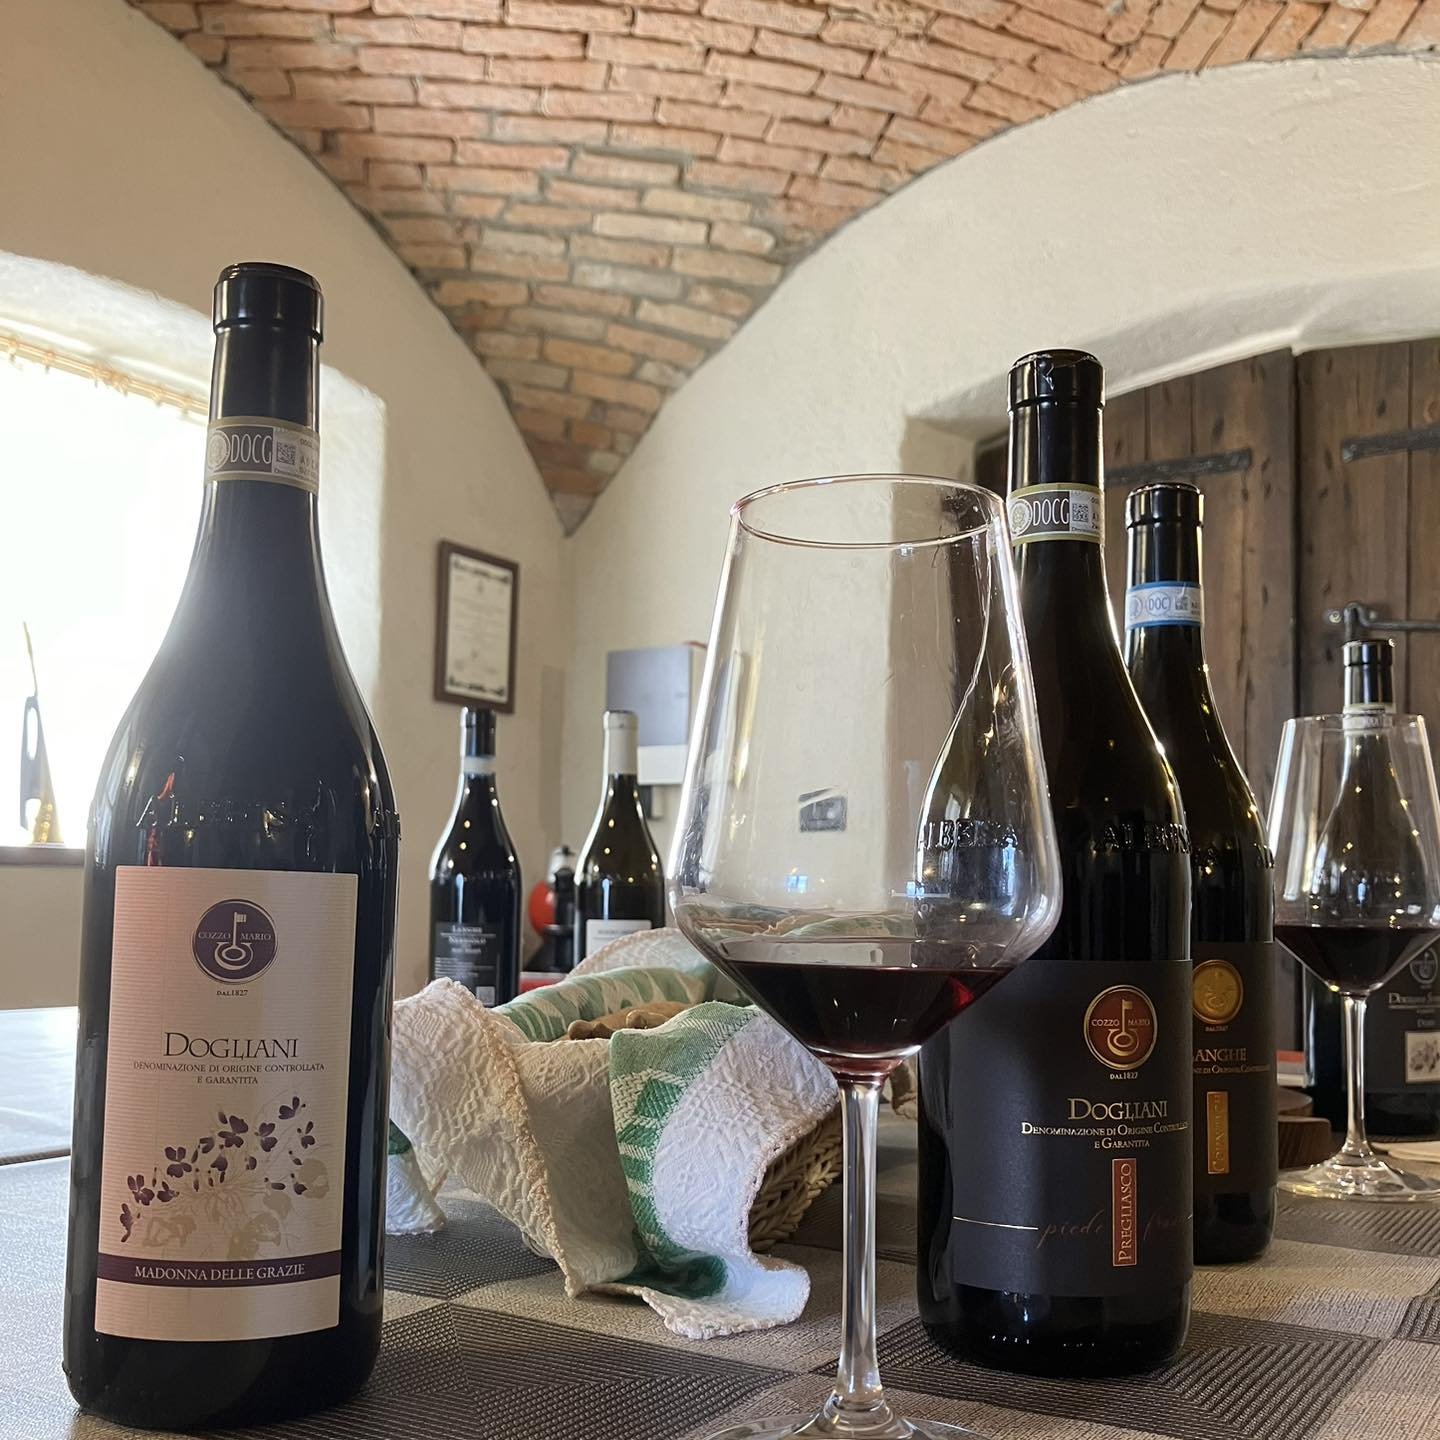 Vandaag weer lekker wijn geproefd en gekocht bij Cozzo Mario in Dogliani. Voor onze gasten en voor onszelf 😉😊🍷